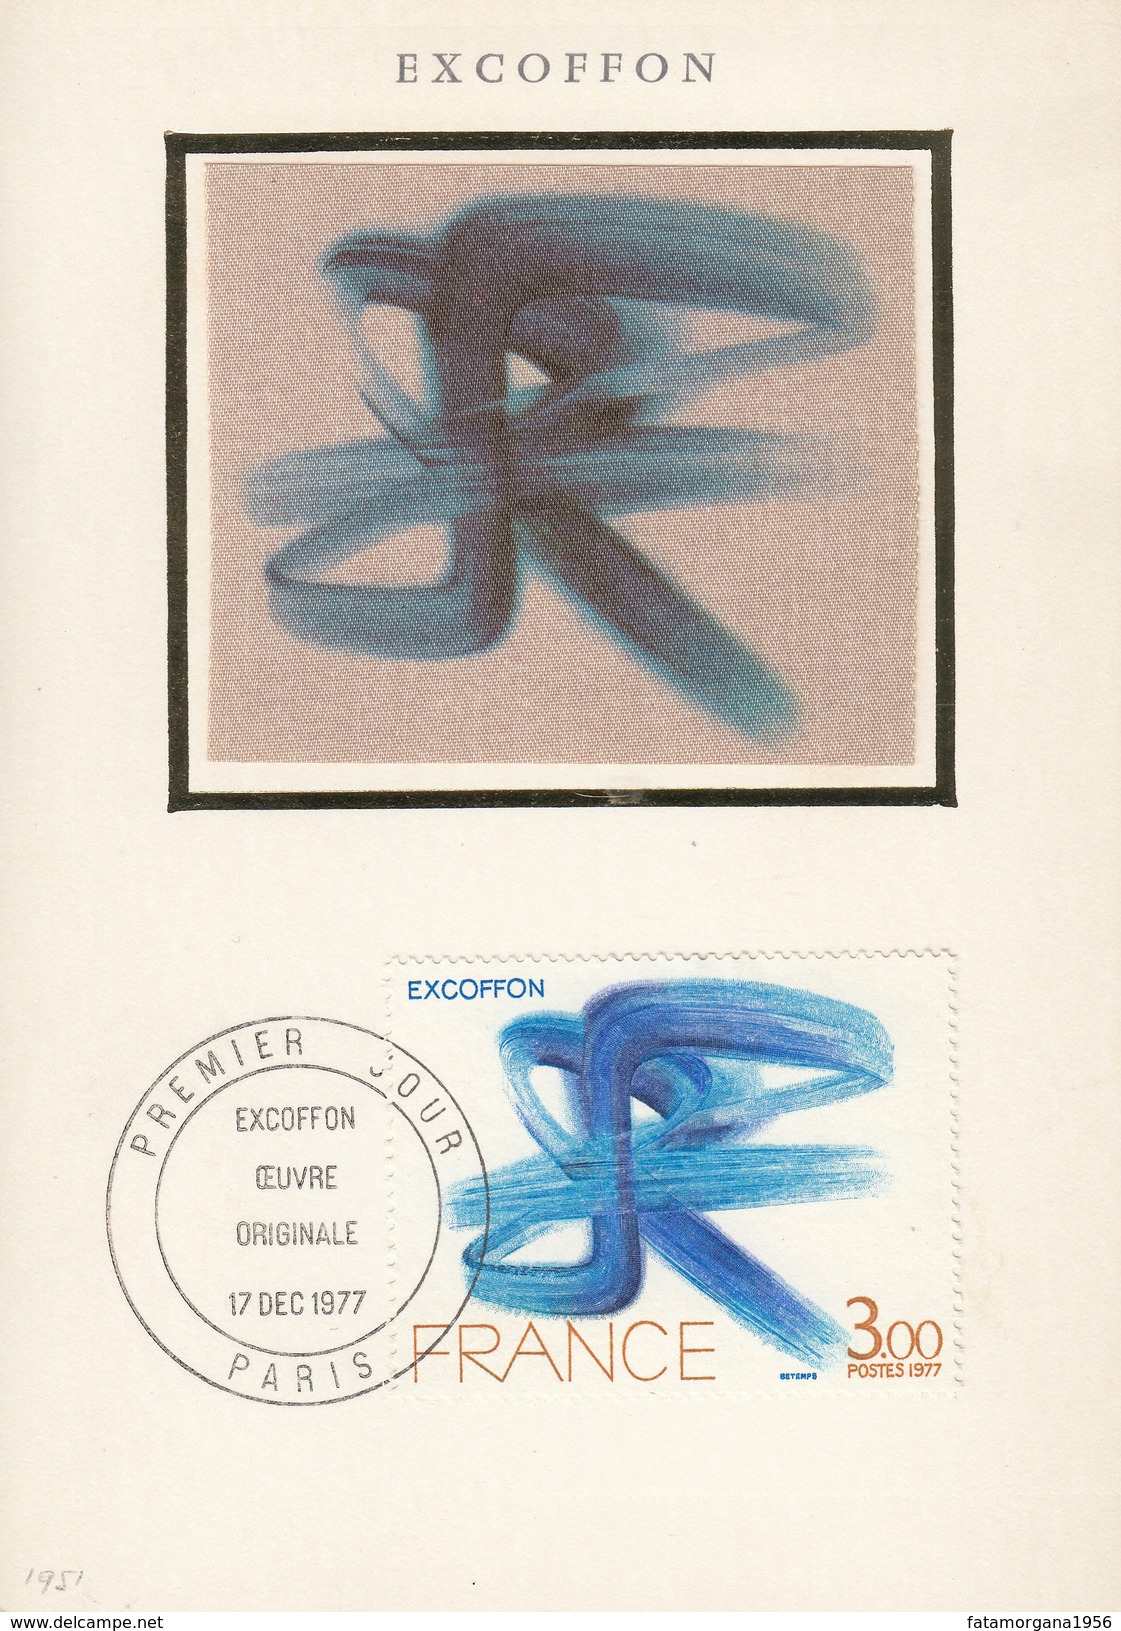 FRANCIA - 1977 - Serie Completa Yvert 1950/1951 Su Due Cartoline Commemorative Con Vignette In Seta E Annullo FDC. - 1970-1979